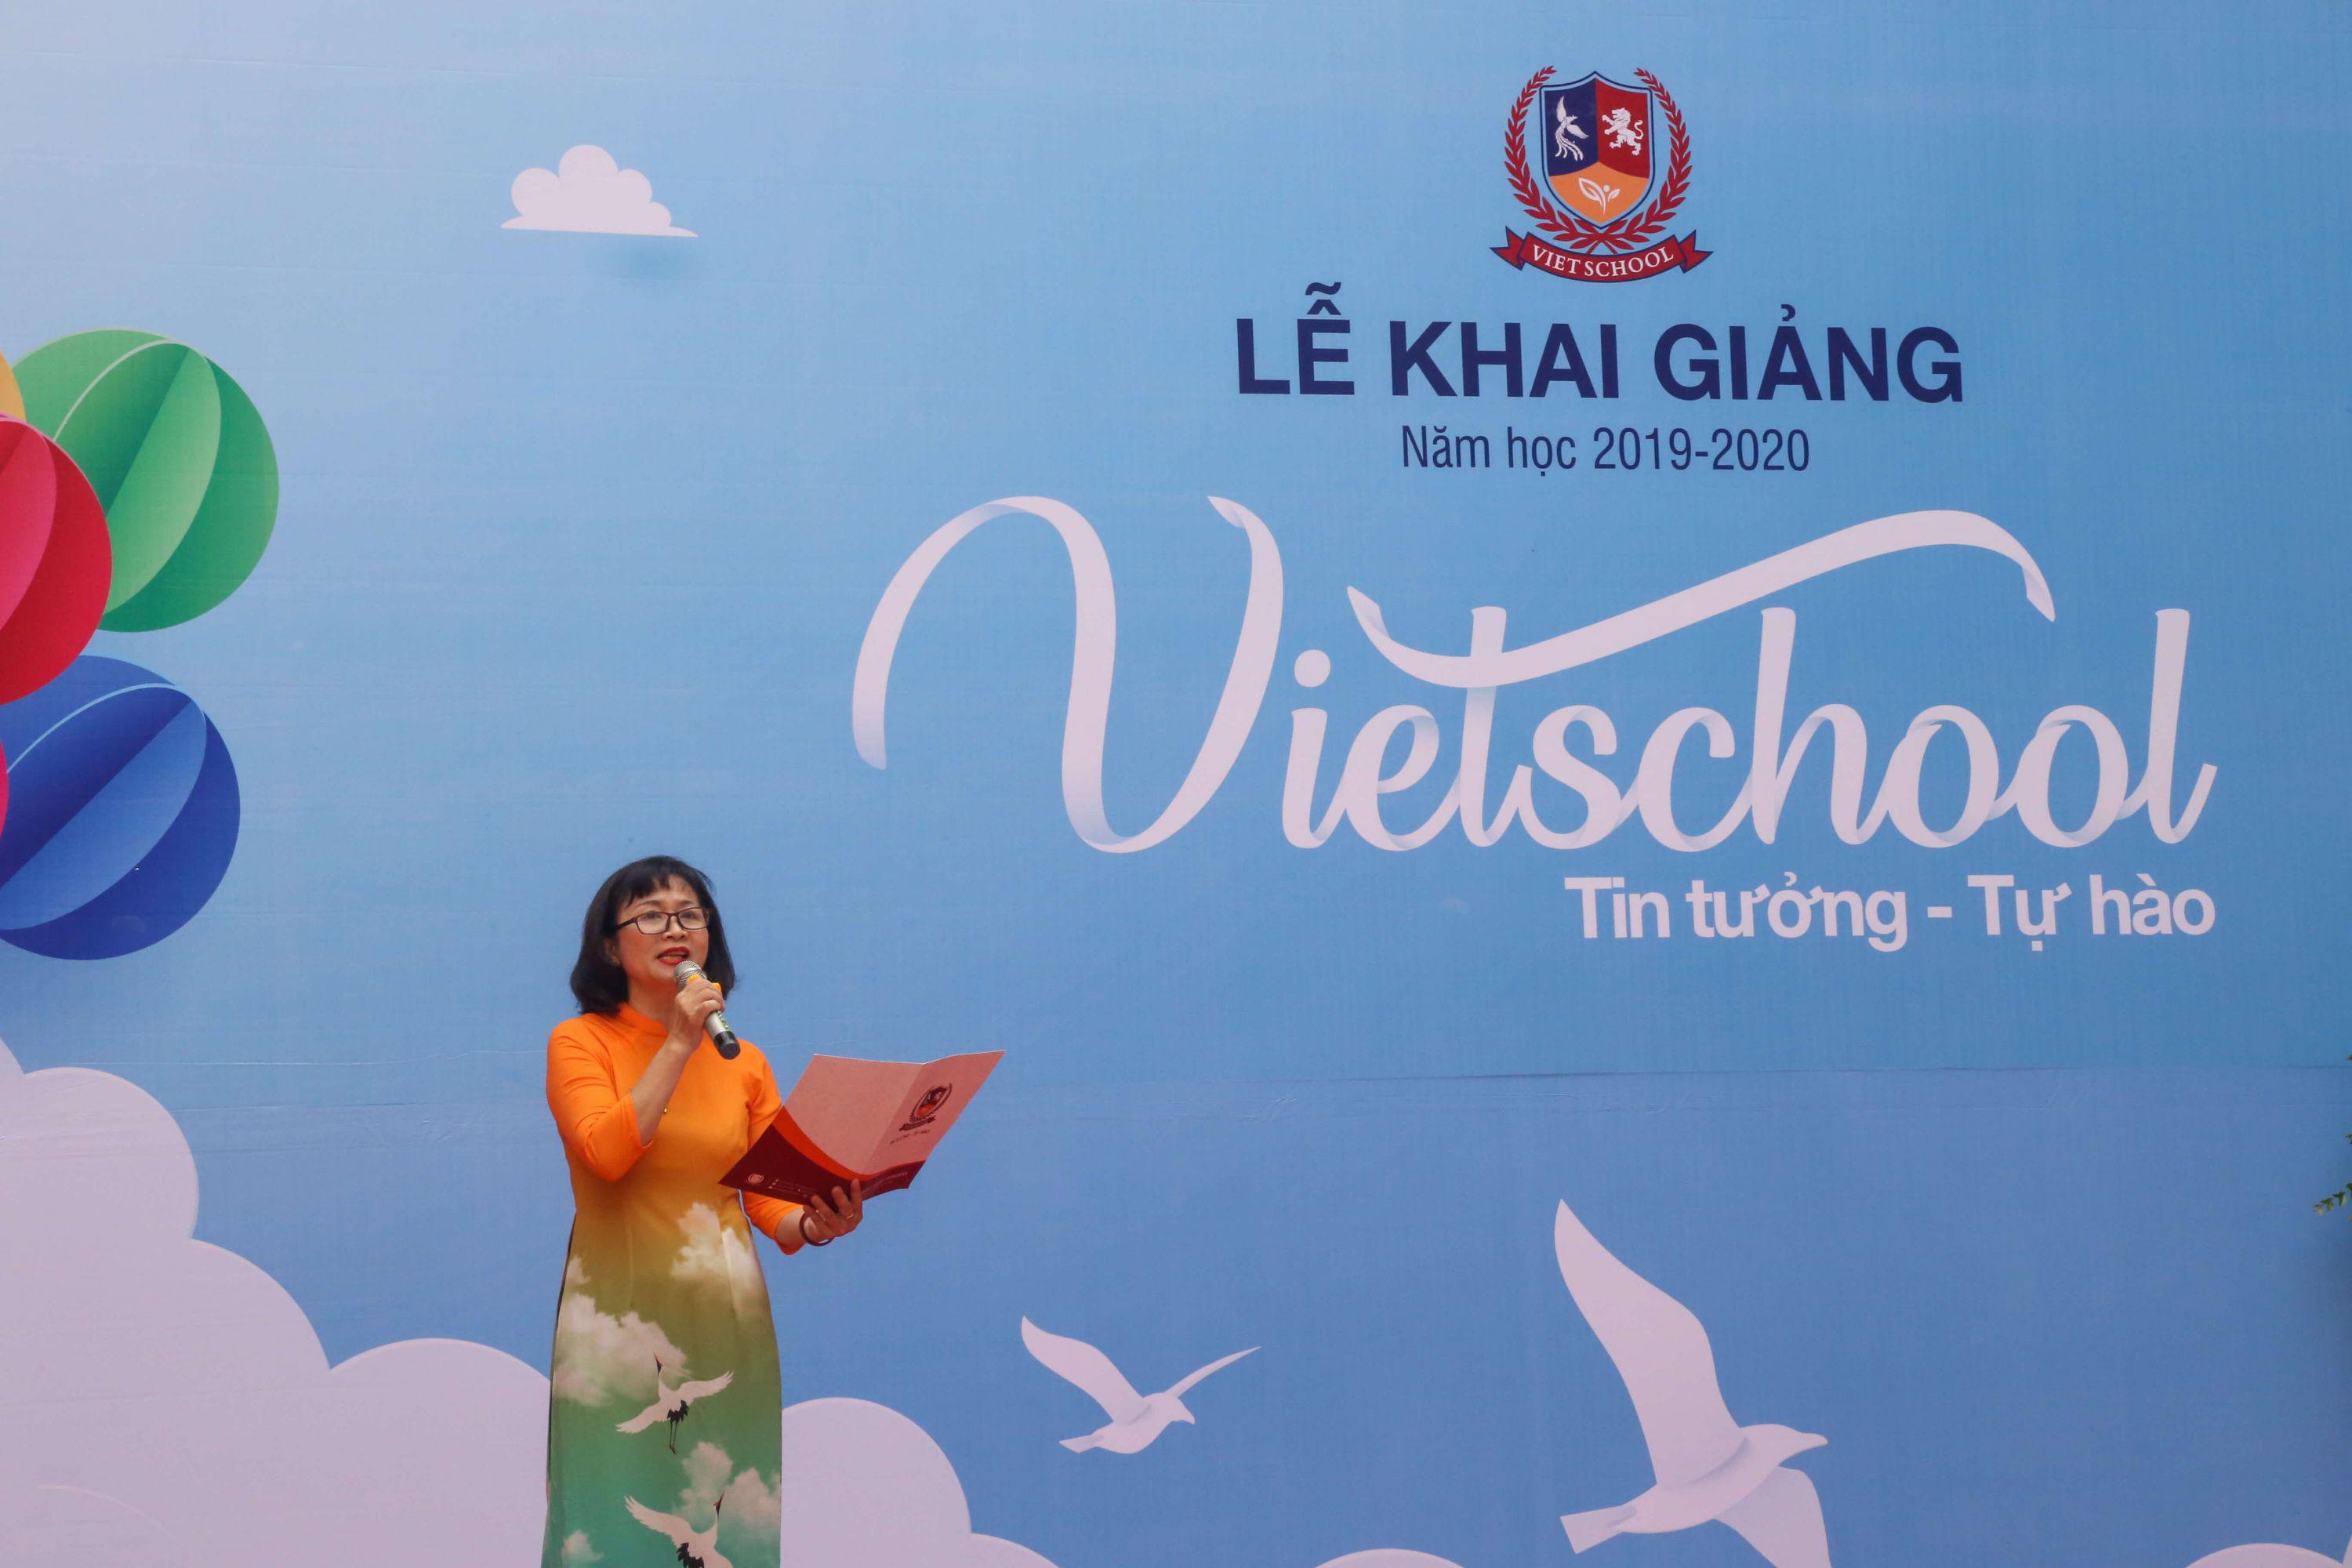 Khai giảng đậm nét văn hóa Việt tại Vietschool